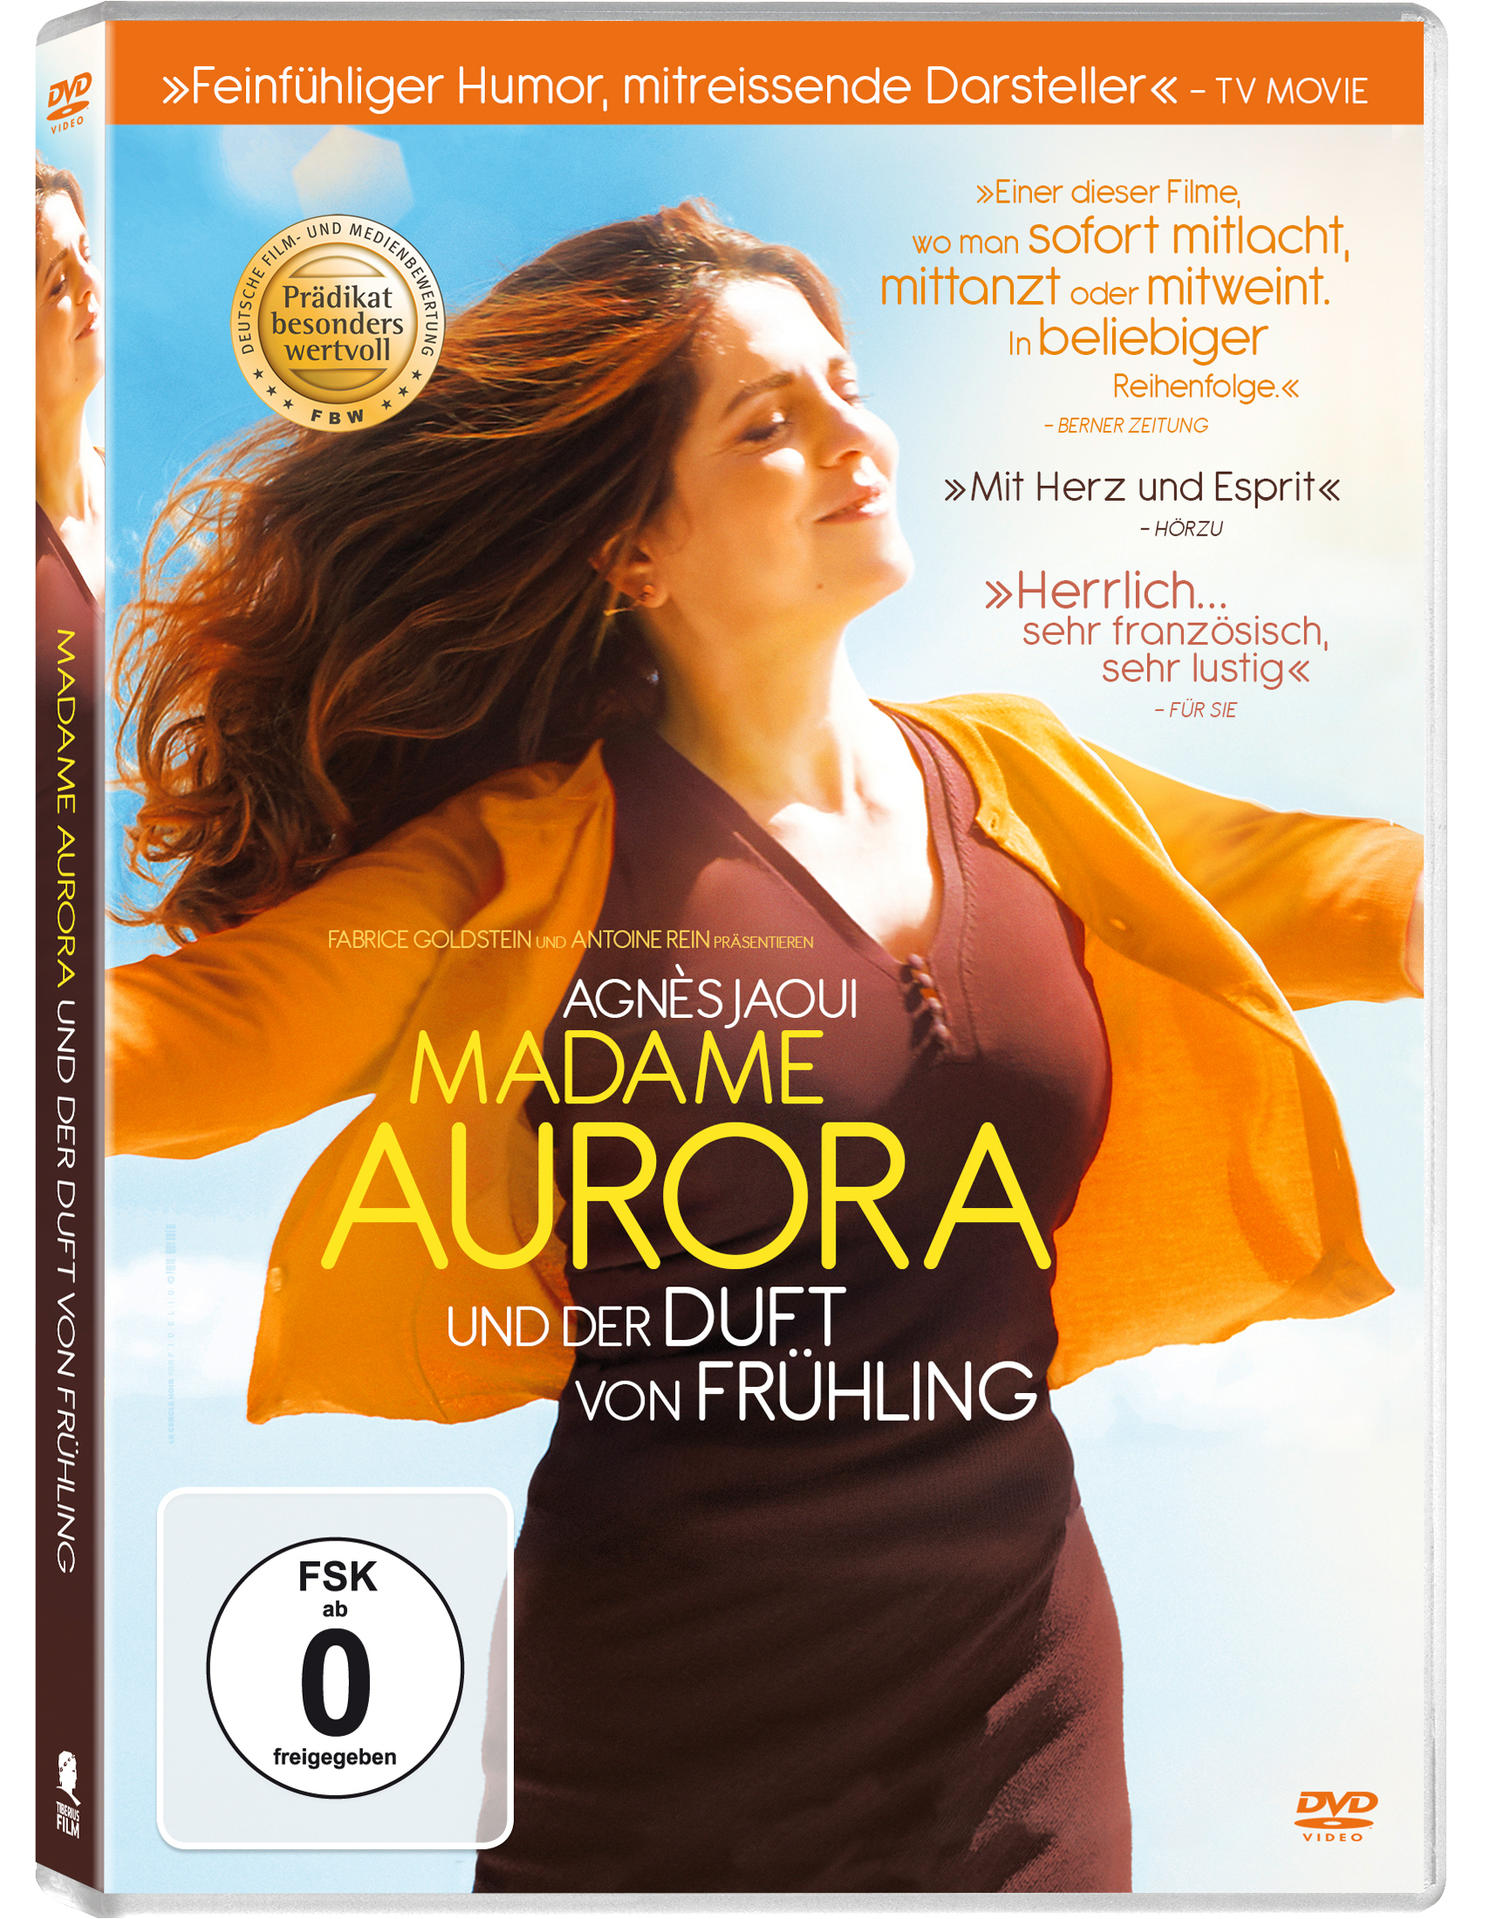 Frühling DVD Duft Madame und der von Aurora